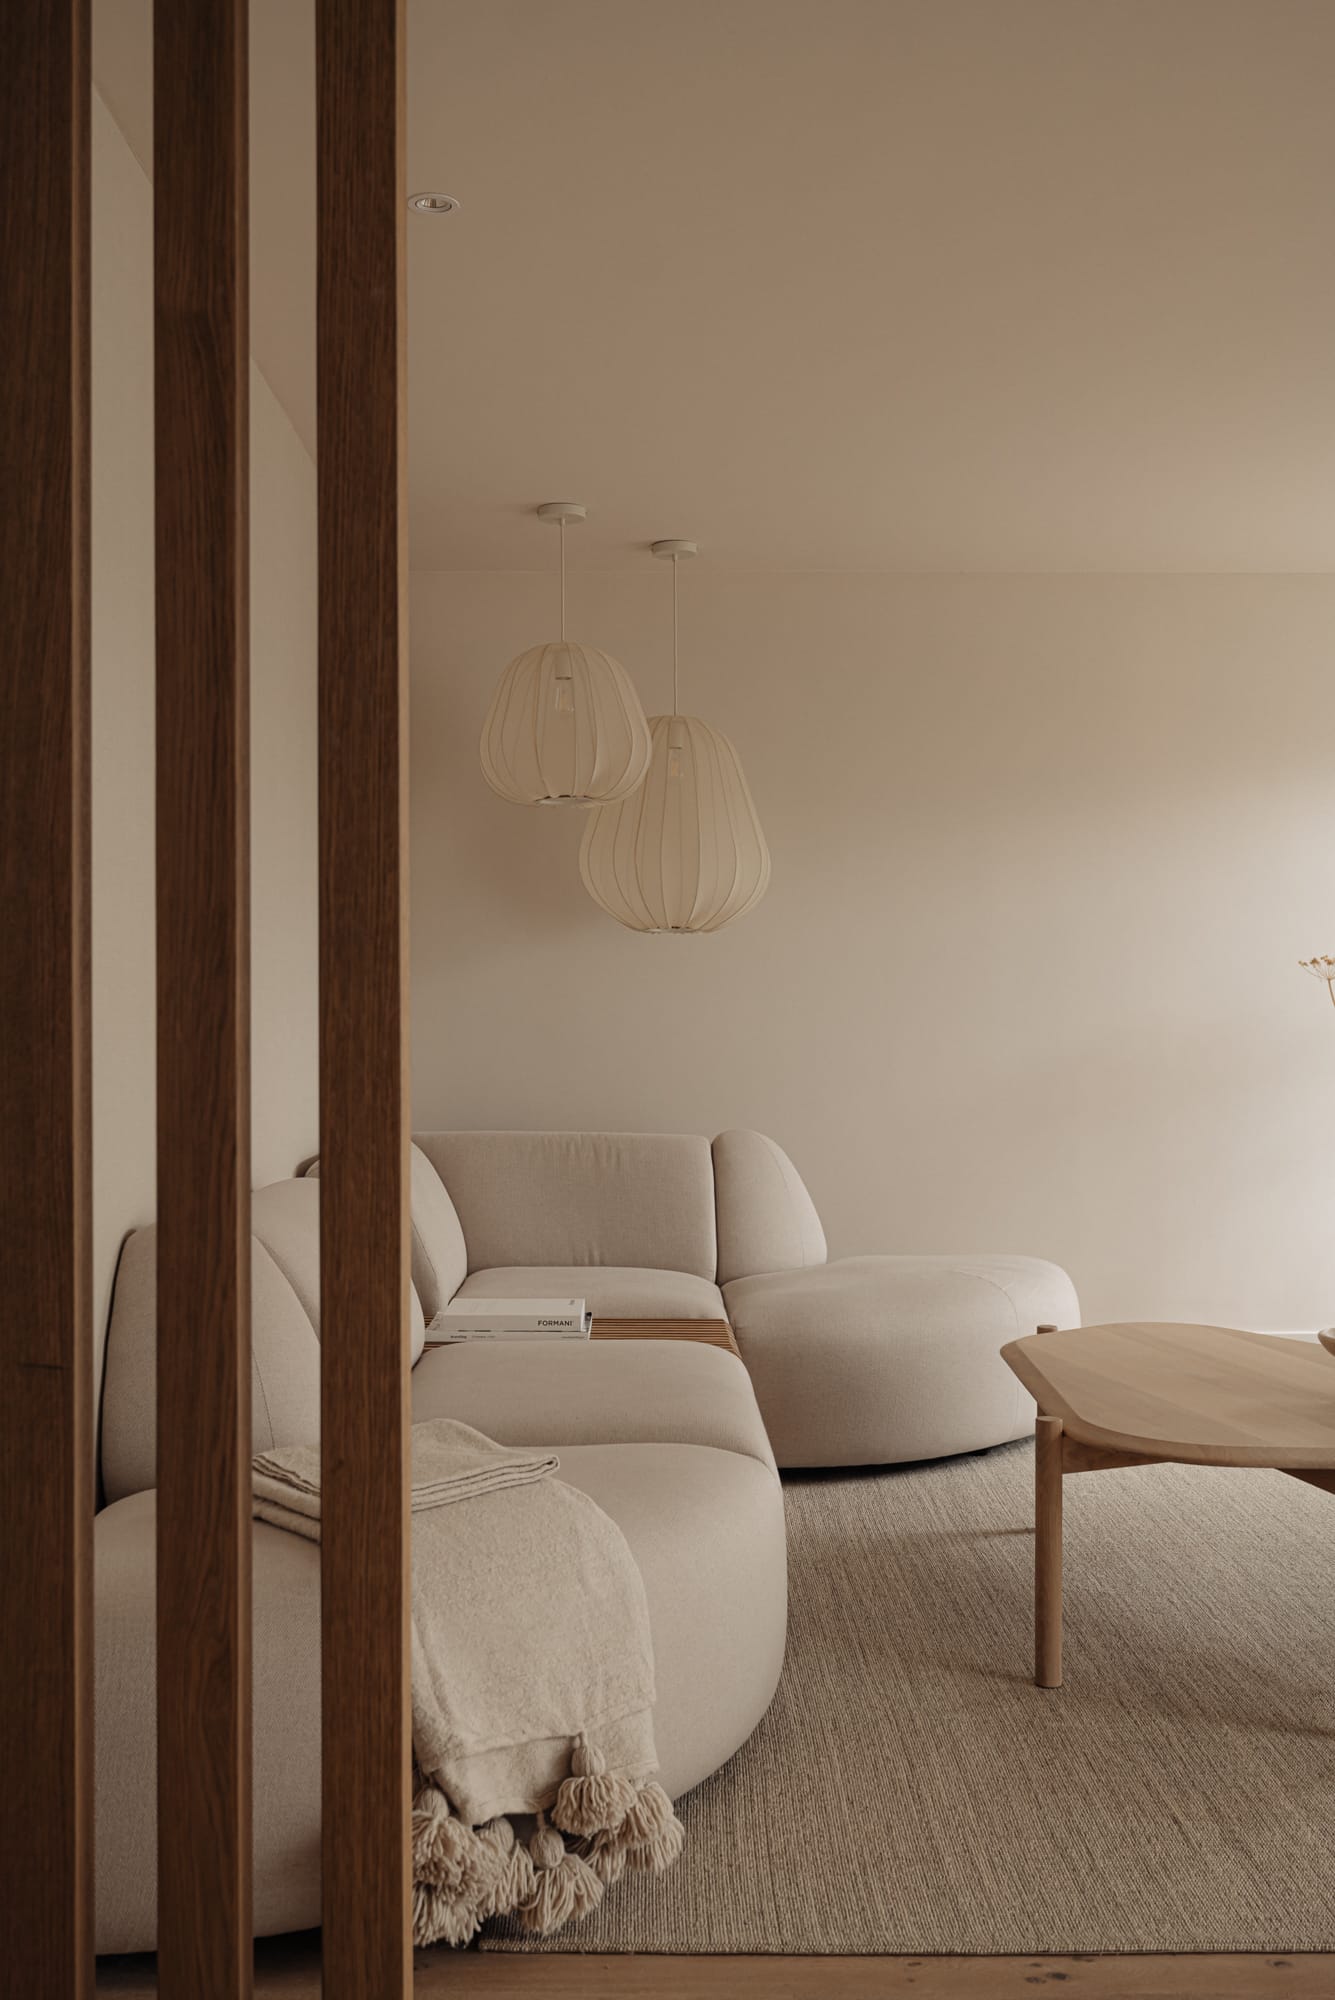 Interieur design traject - Heerhugowaard - Woonhuis - Zithoek japandi roomdivider